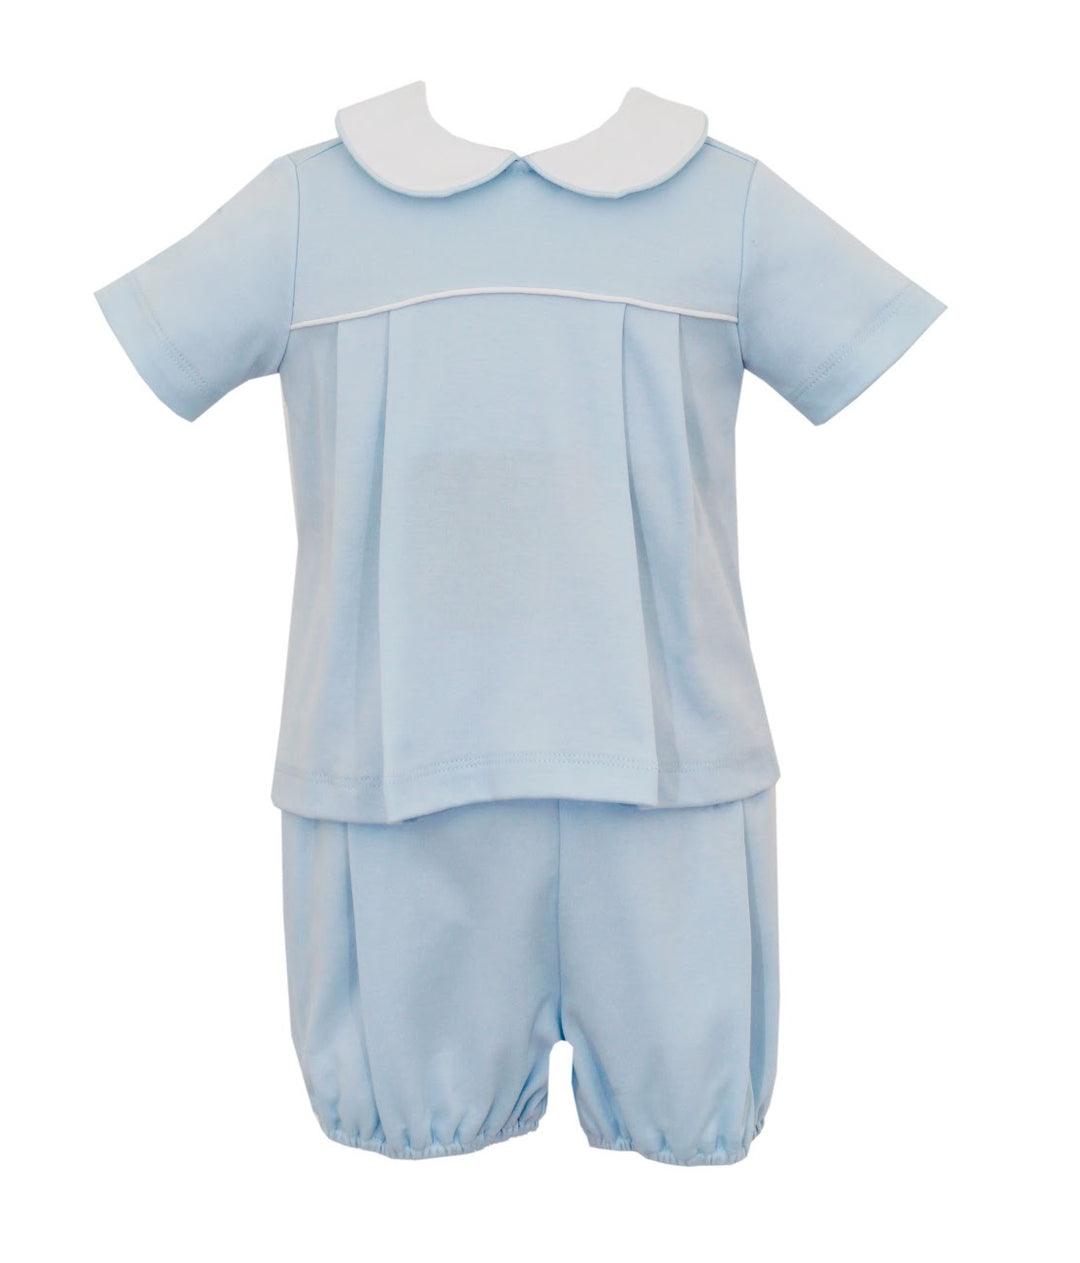 knit short sleeve diaper set- light blue